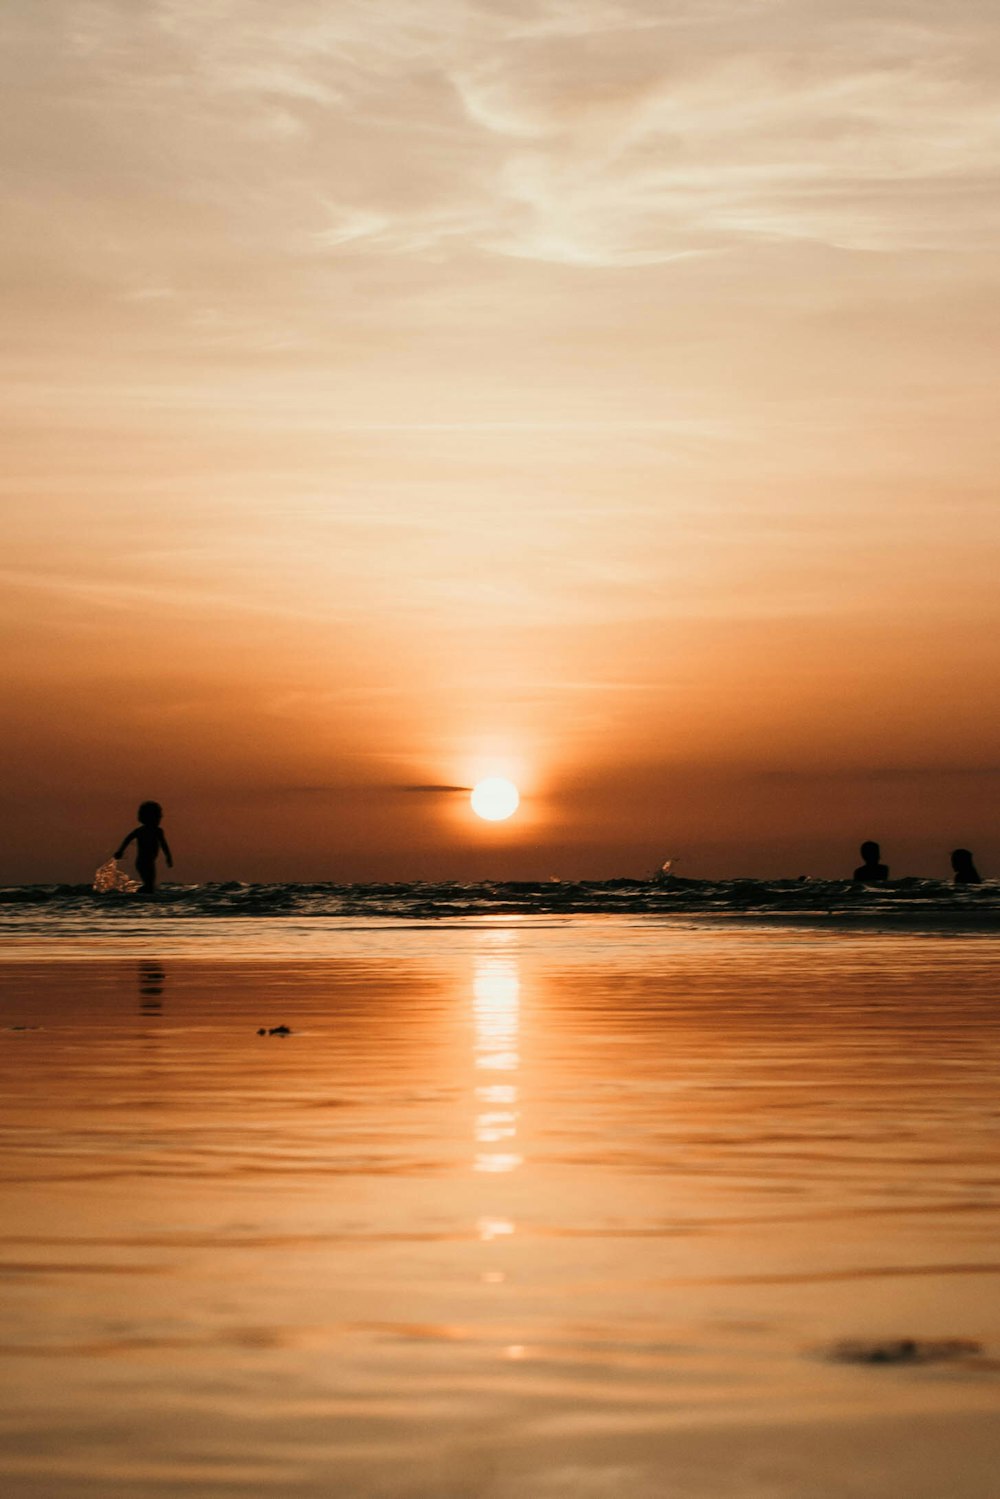 Fotografía de la silueta de dos personas en el cuerpo de agua durante la puesta del sol